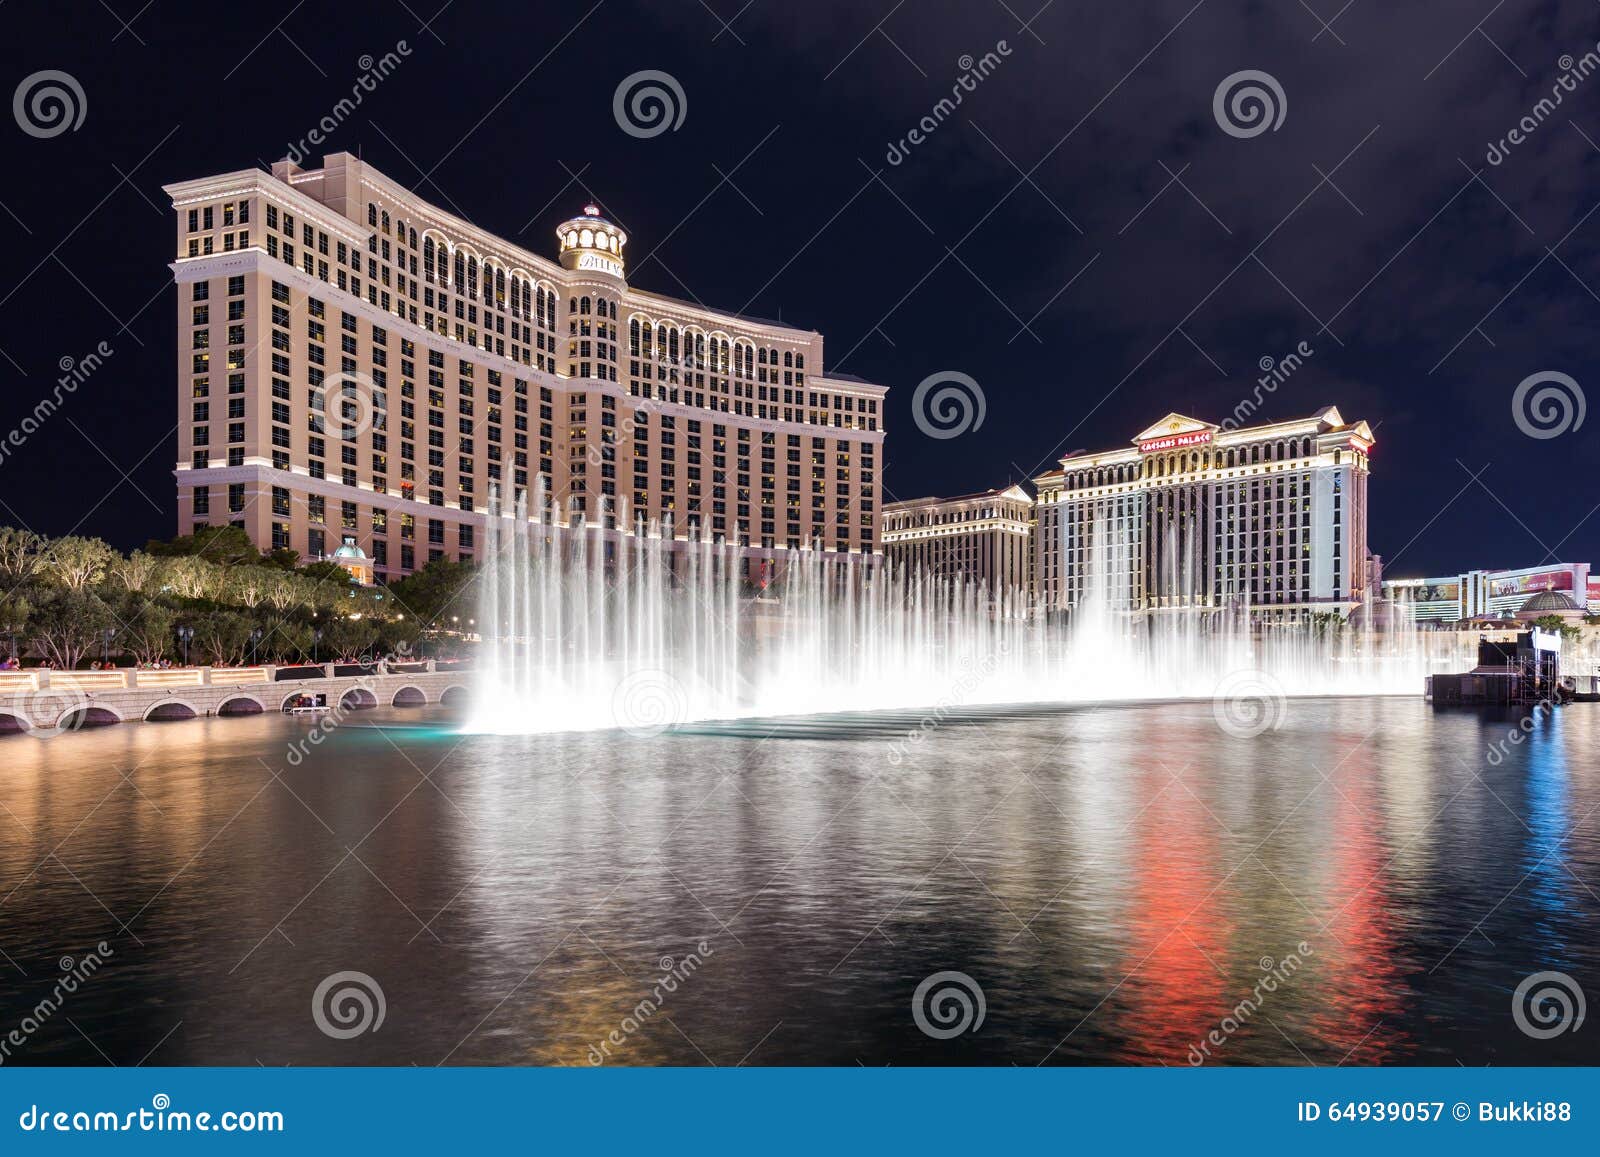 Las Vegas Caesars Palace Shows